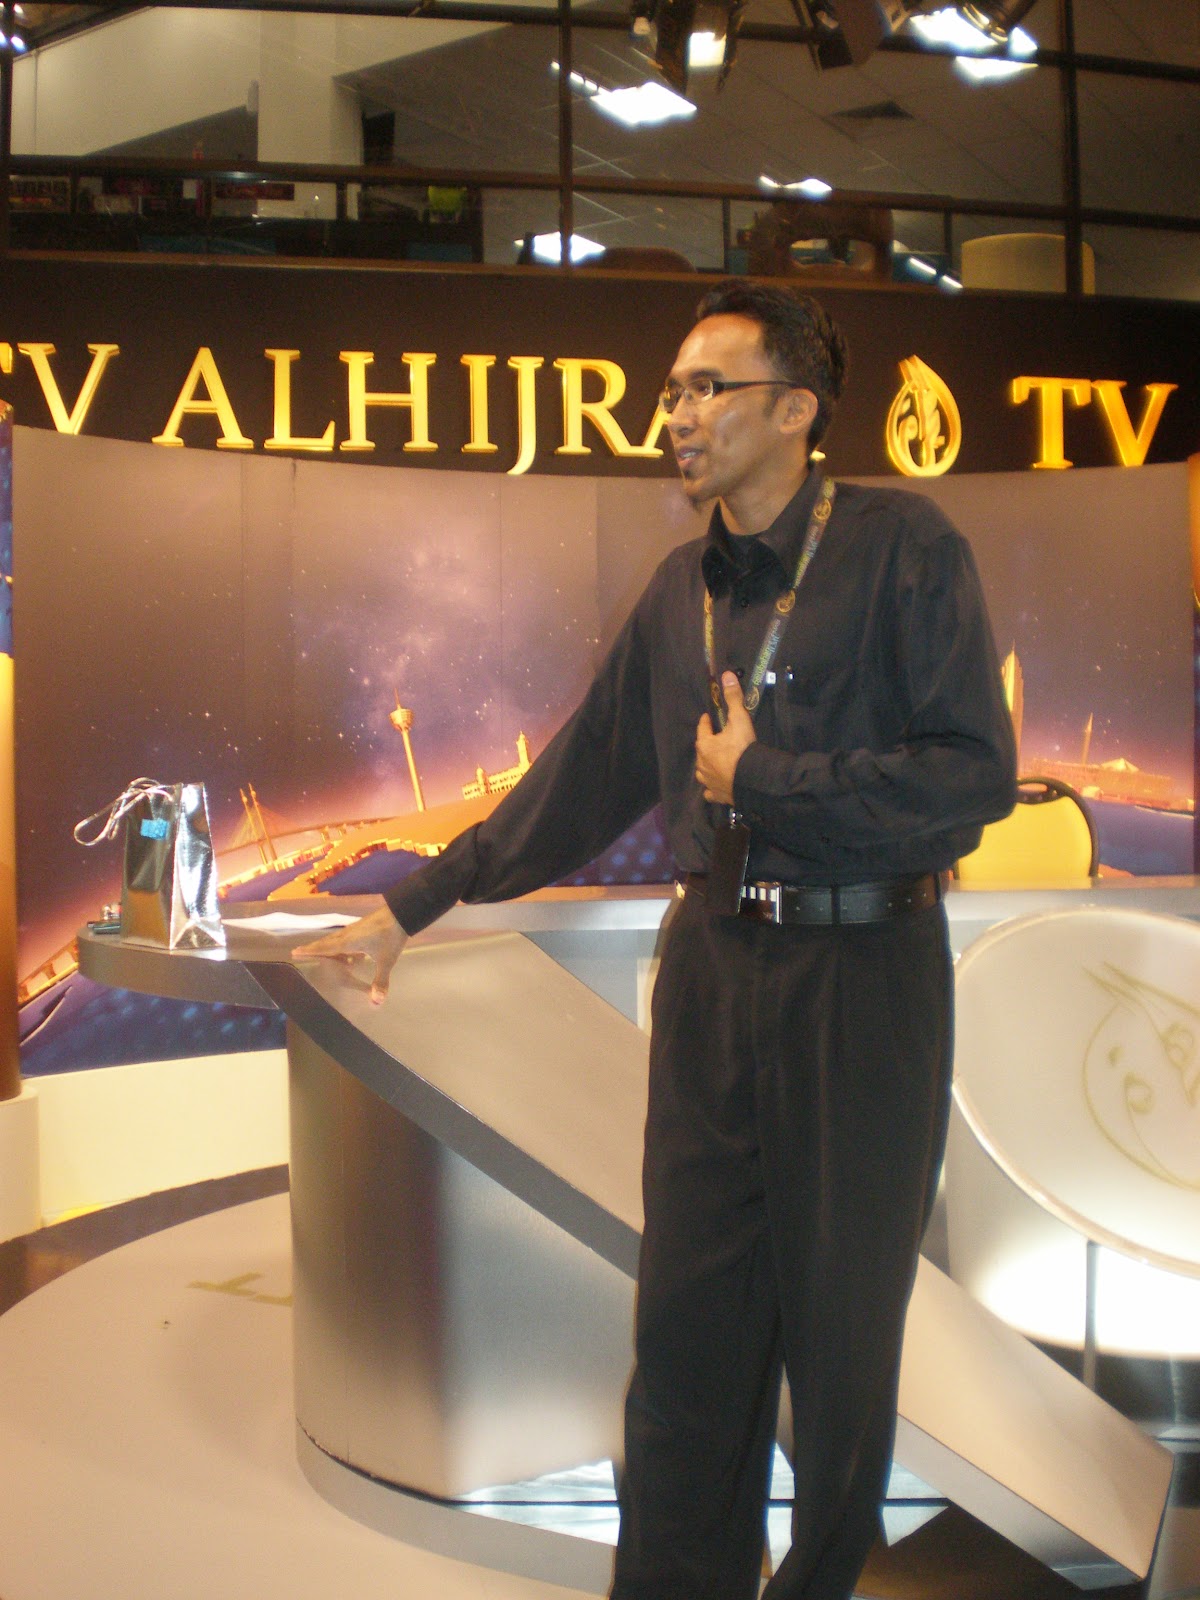 Kembara Hidup: Lawatan Ke TV Al-Hijrah